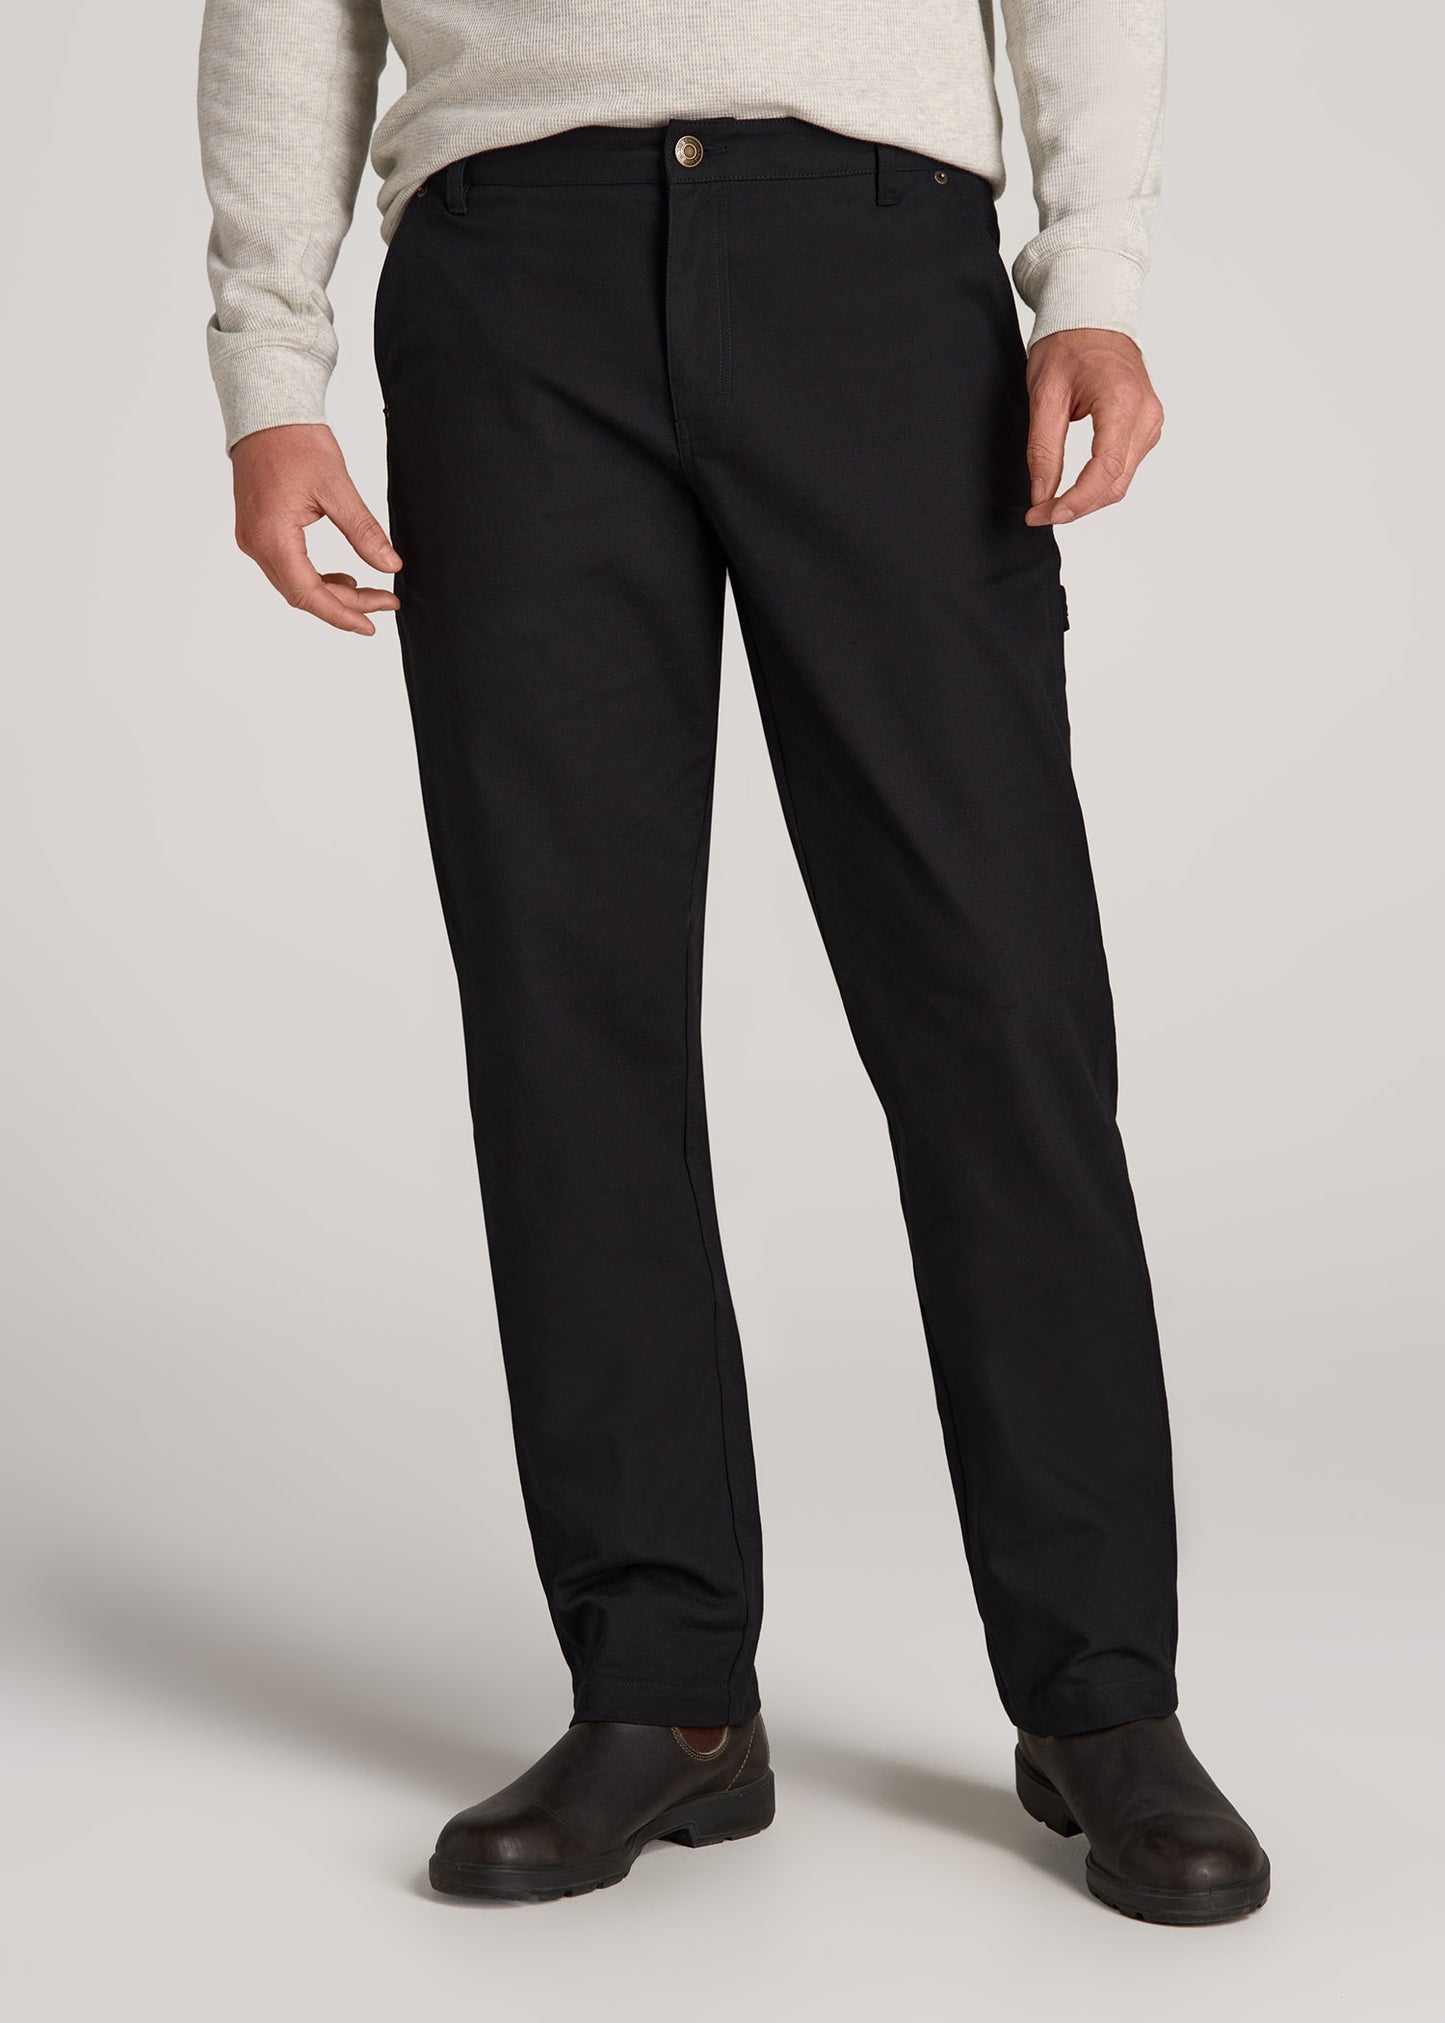 Size 13 Tech Pants Men Casual Versatile Fashion Trousers Pant Pants Soild  Color Slim Fit Small Feet Suit Trousers - Walmart.com